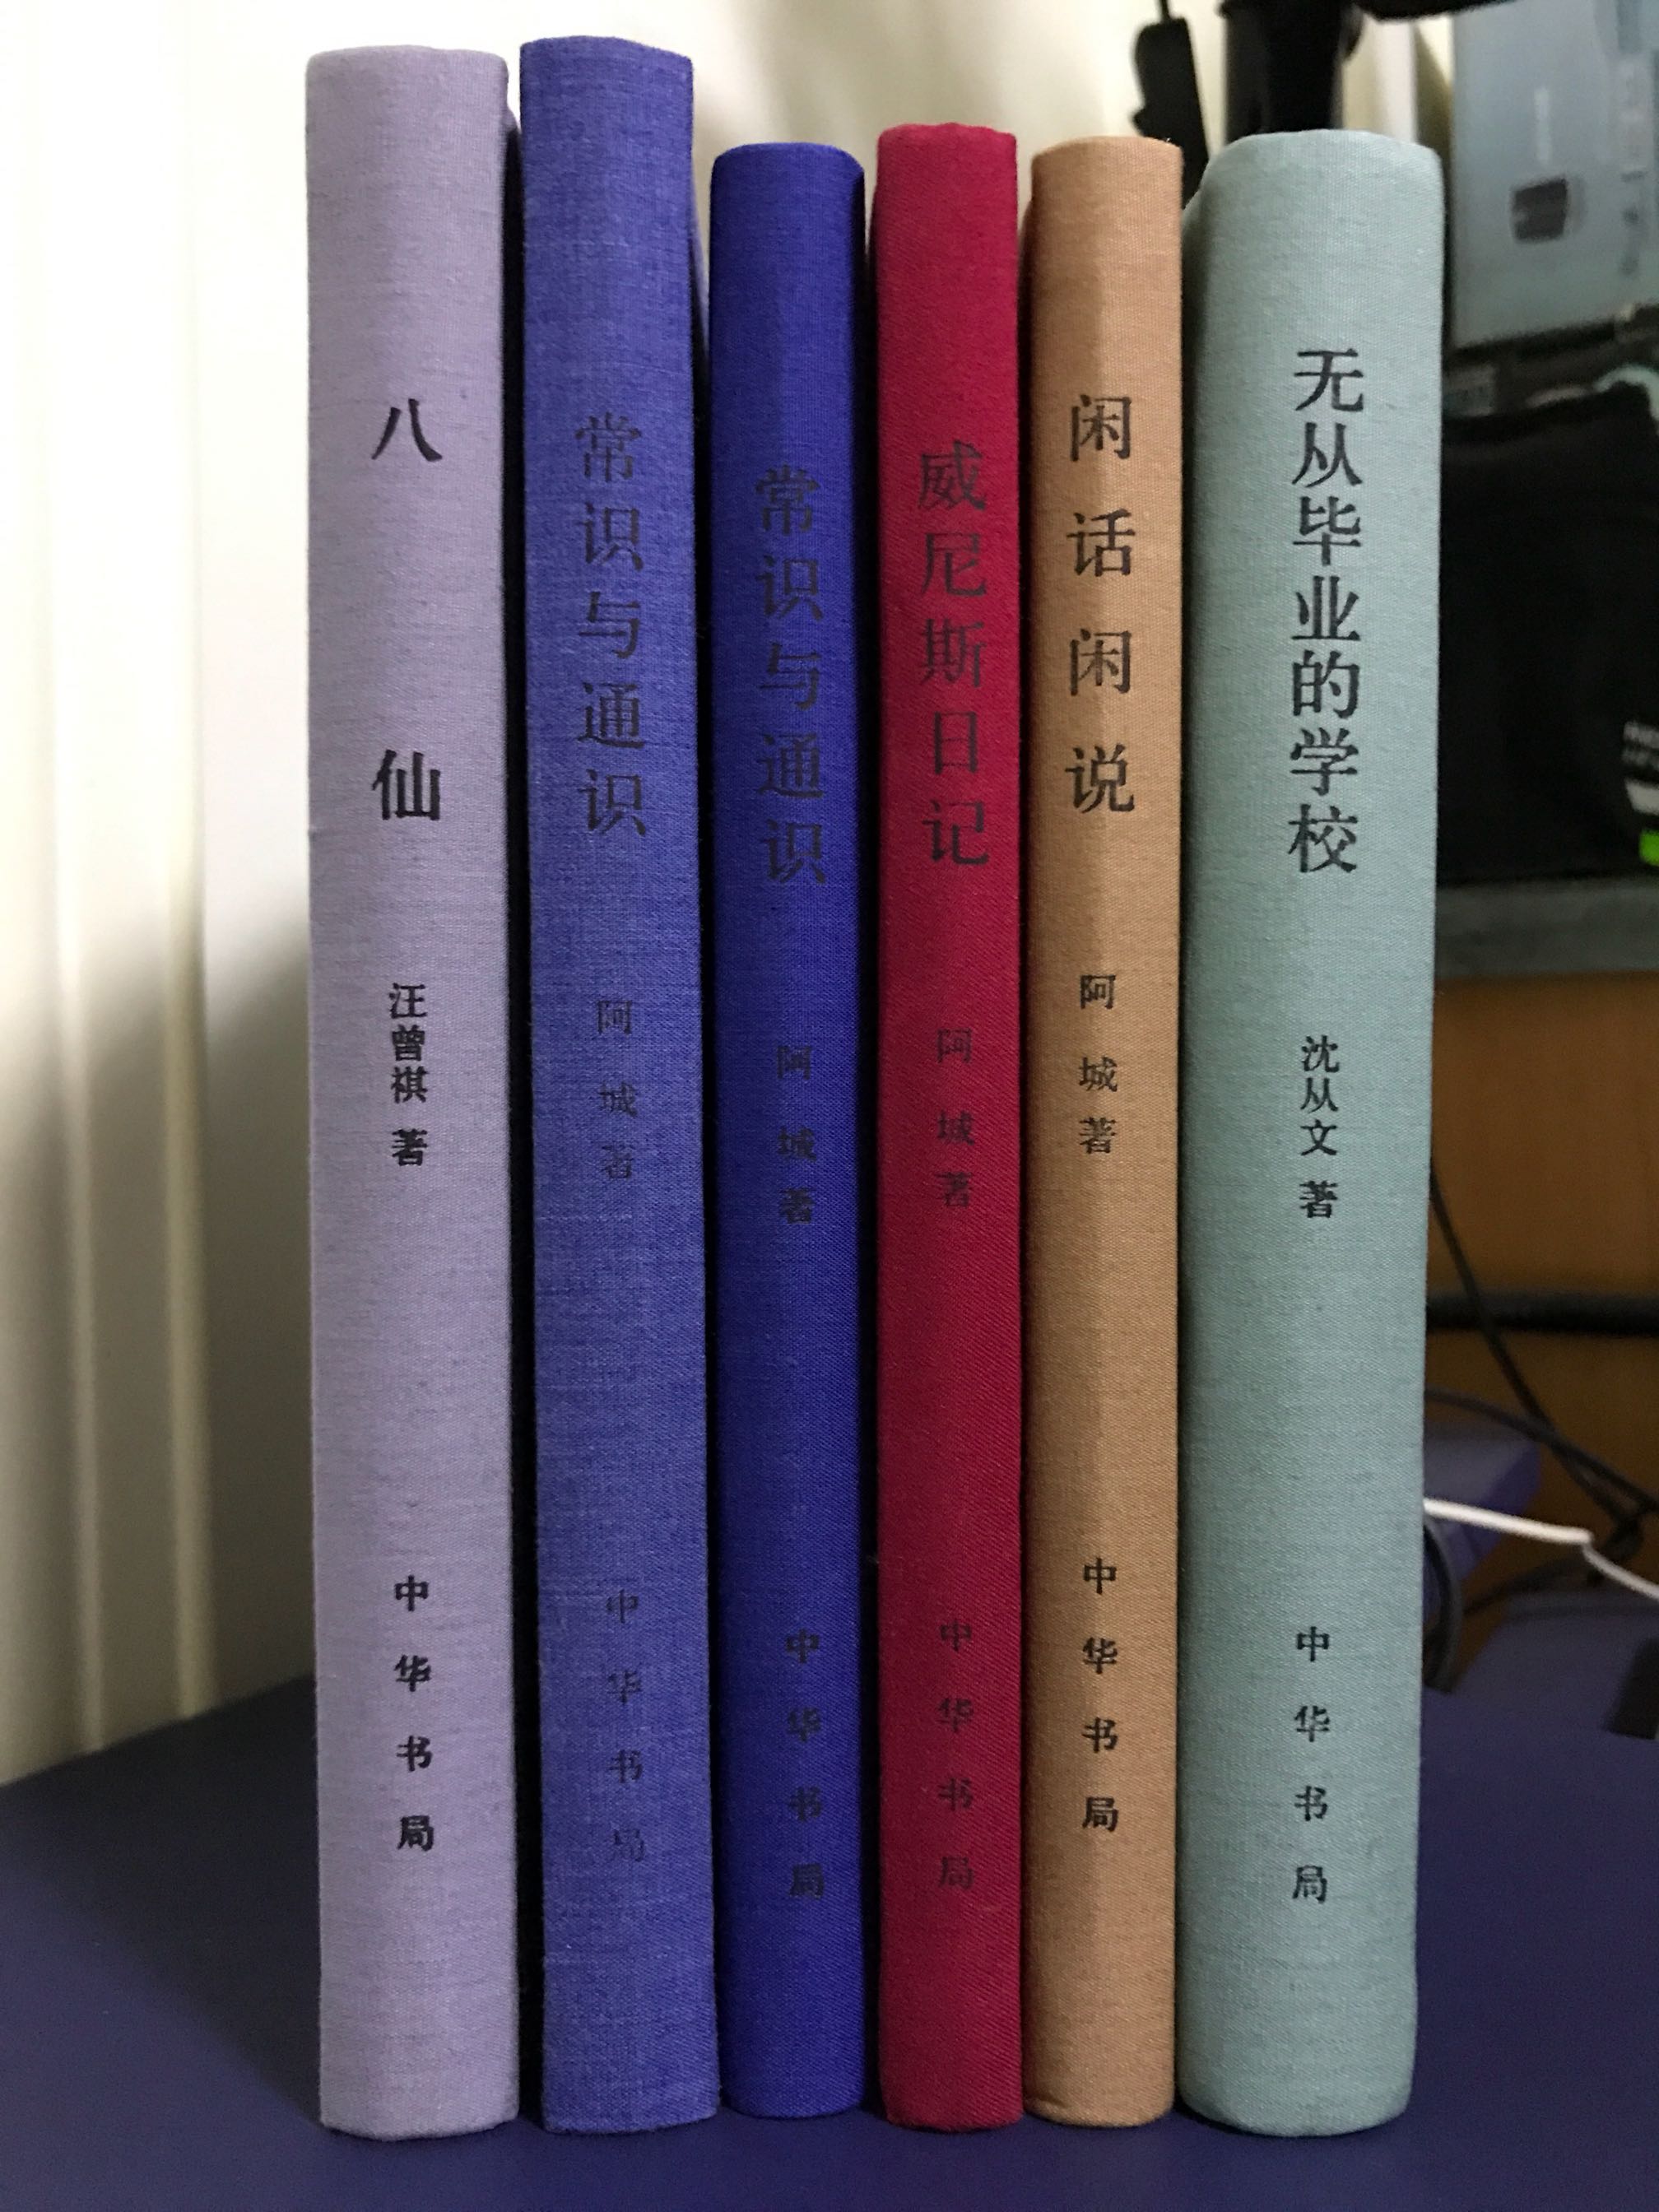 这套中华书局的作品每一本都很喜欢！当然最喜欢阿城！